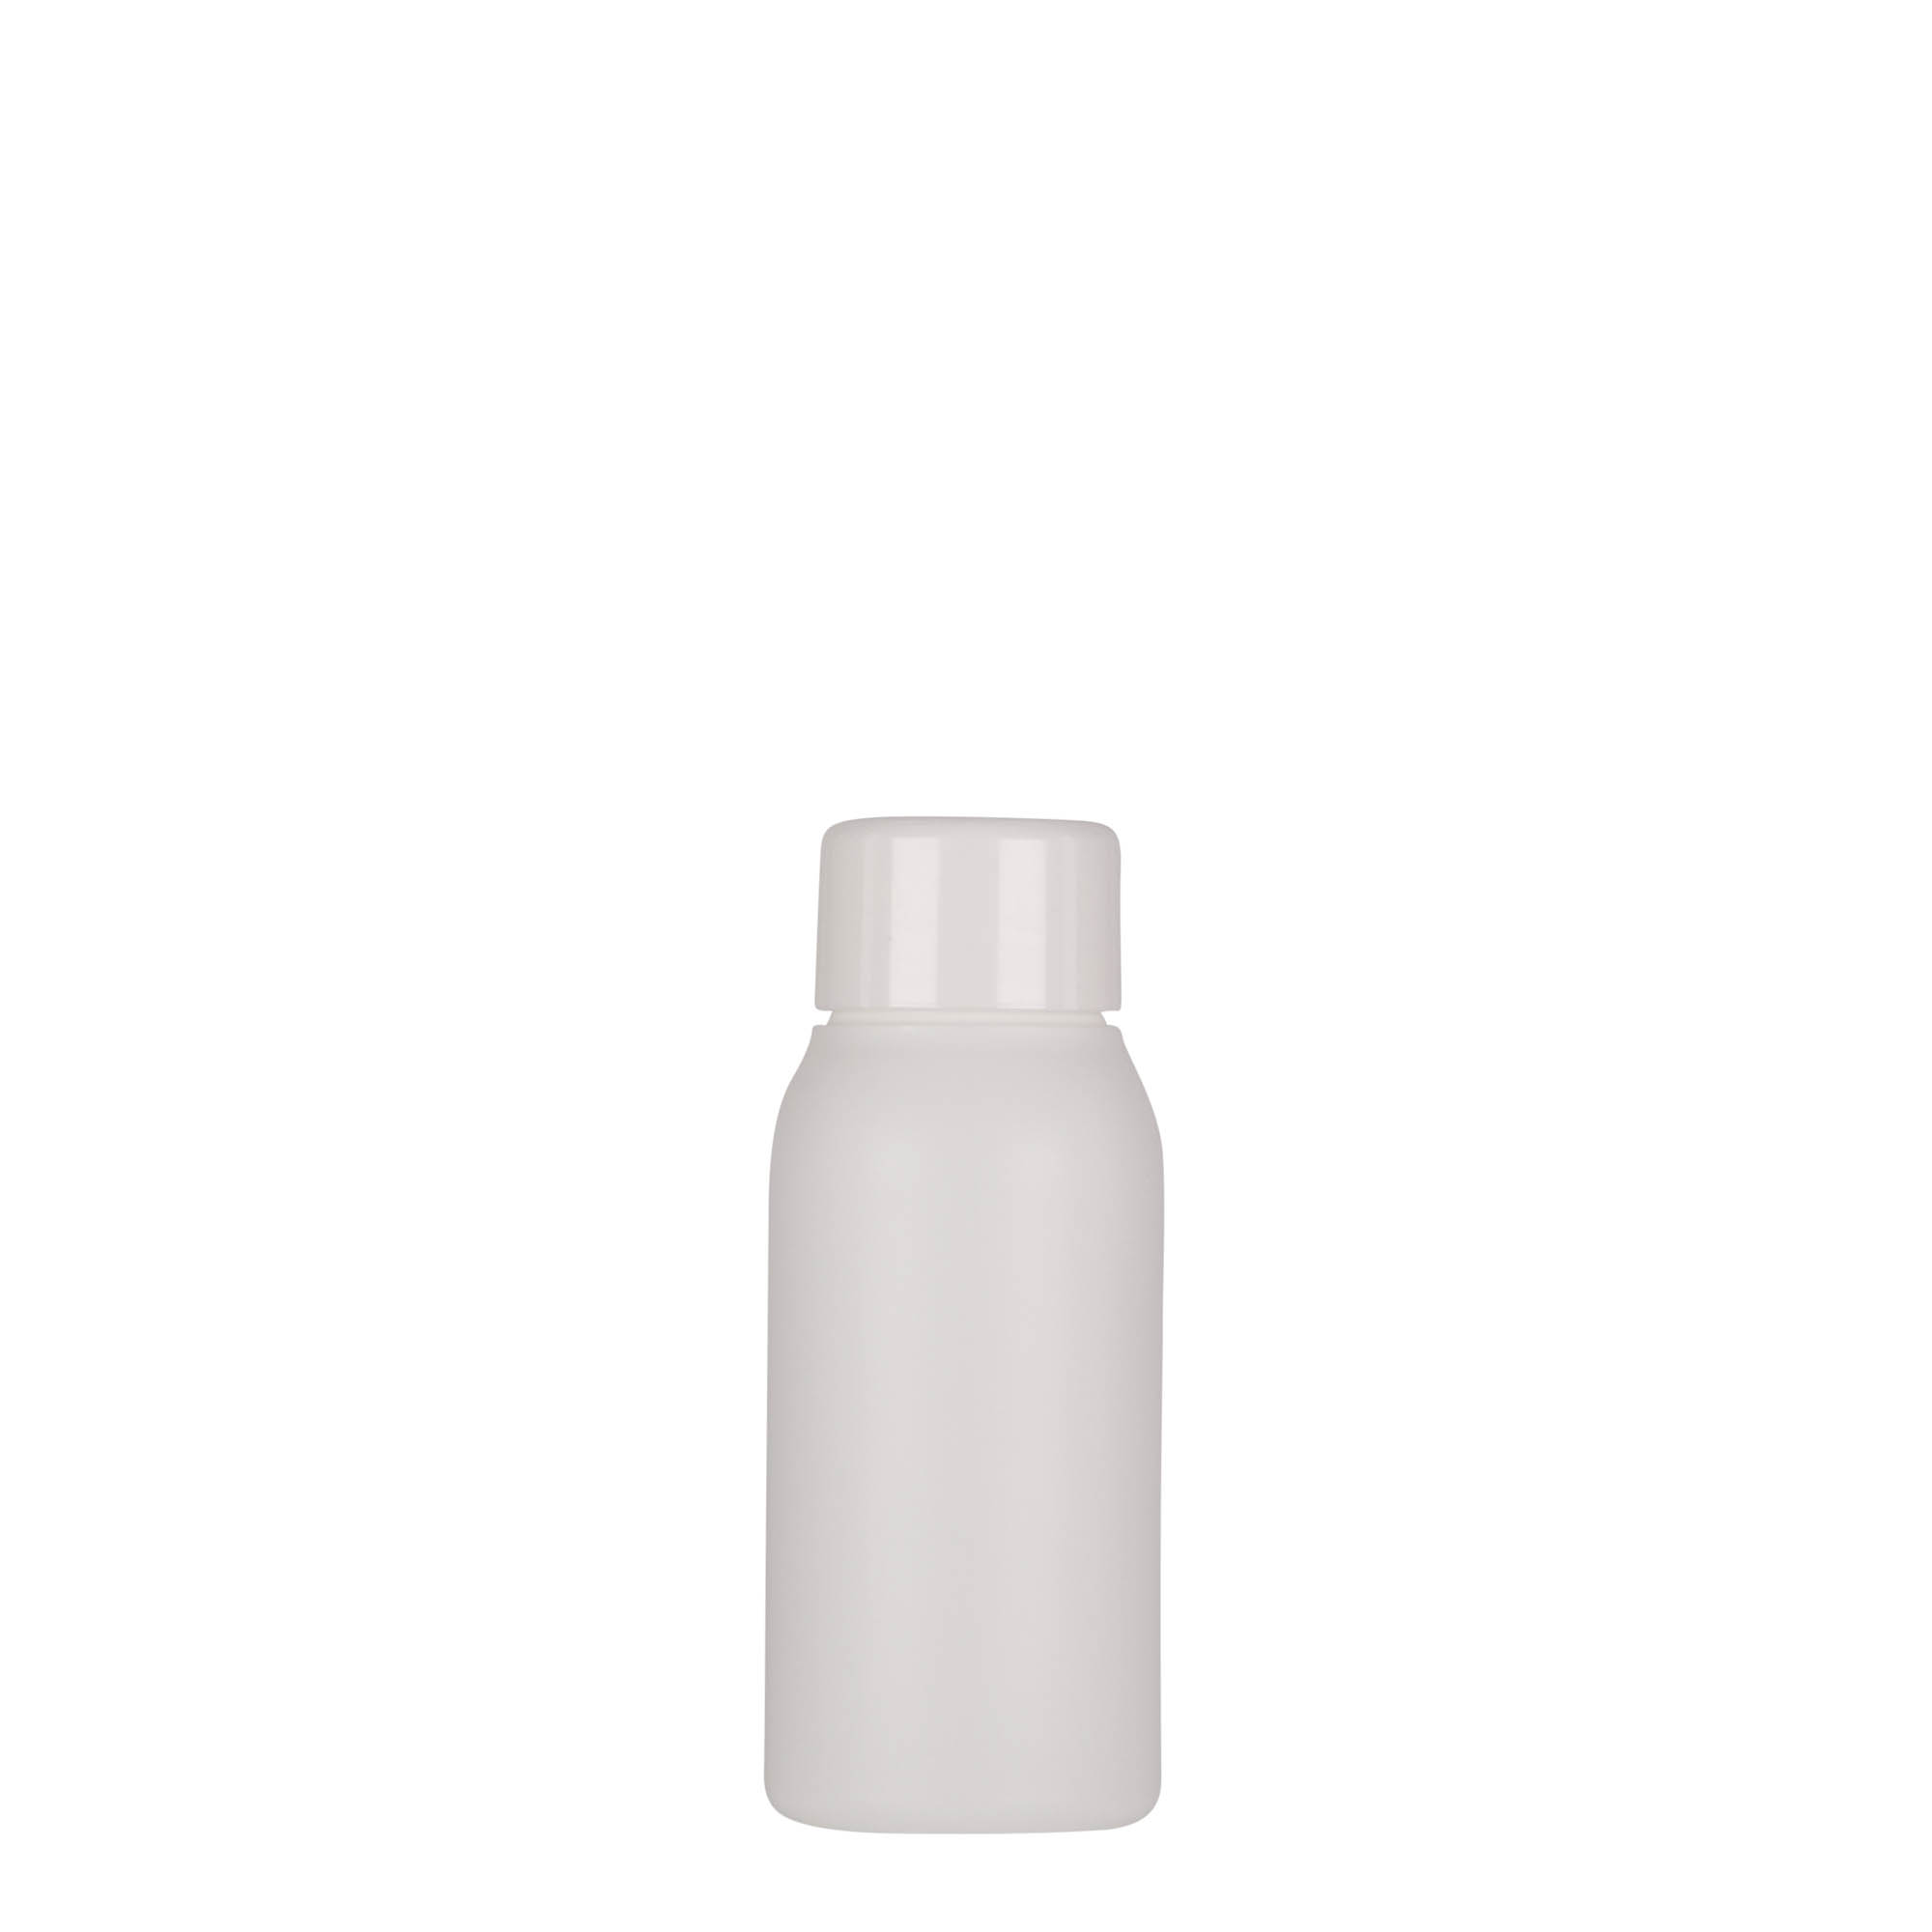 50 ml-es műanyag palack 'Tuffy', HDPE, fehér, szájnyílás: GPI 24/410